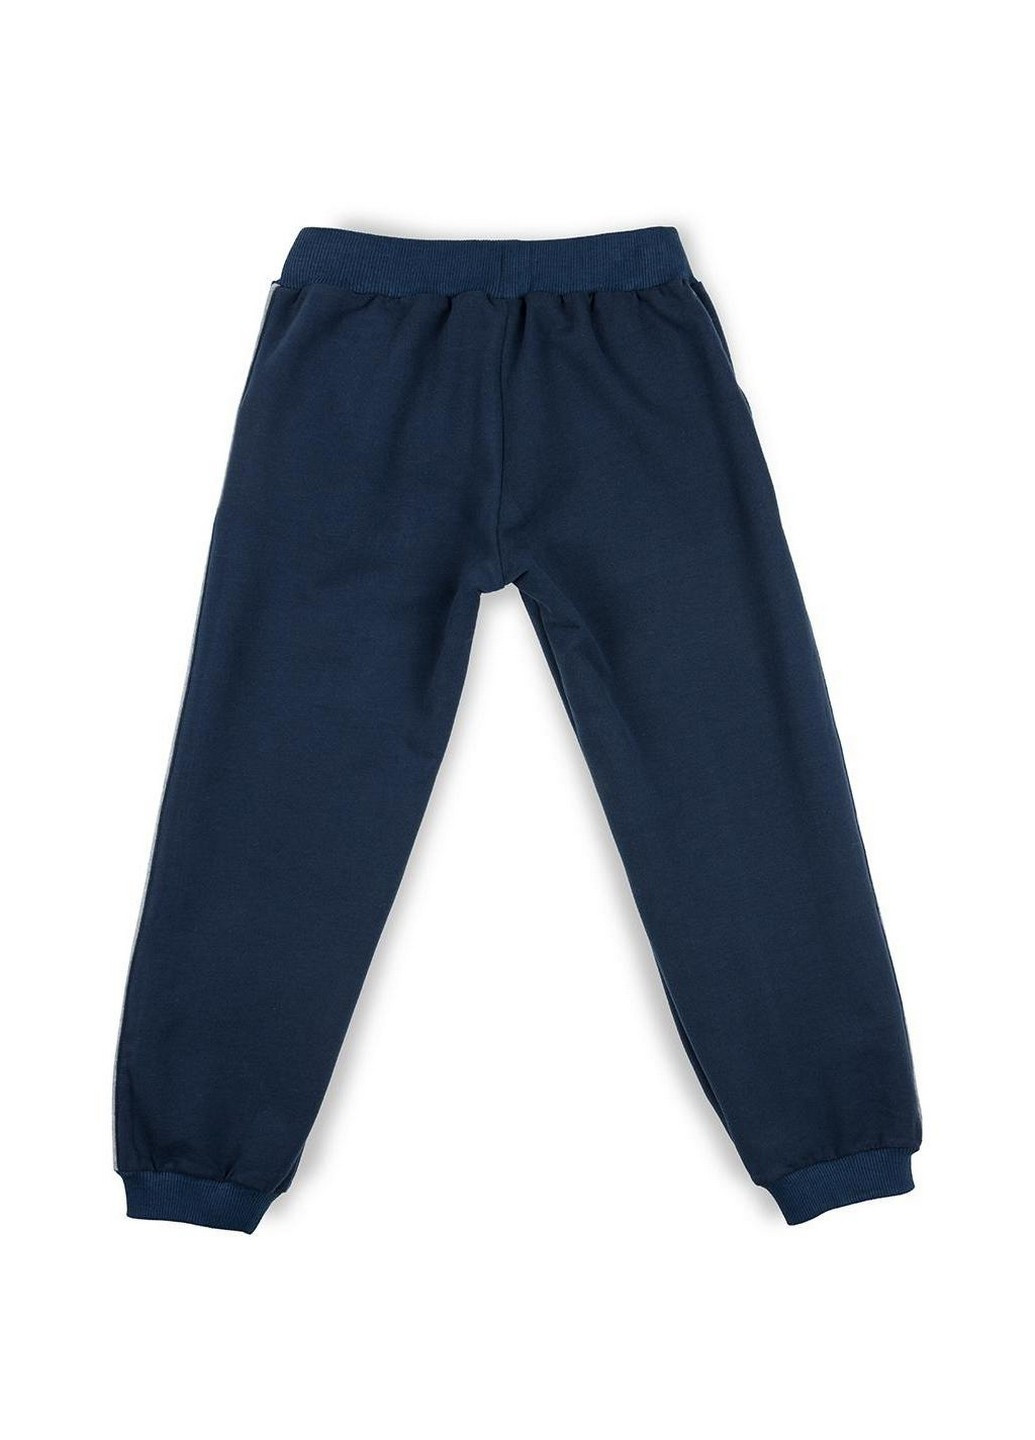 Синій набір дитячого одягу "new york" (9691-116b-gray) Breeze